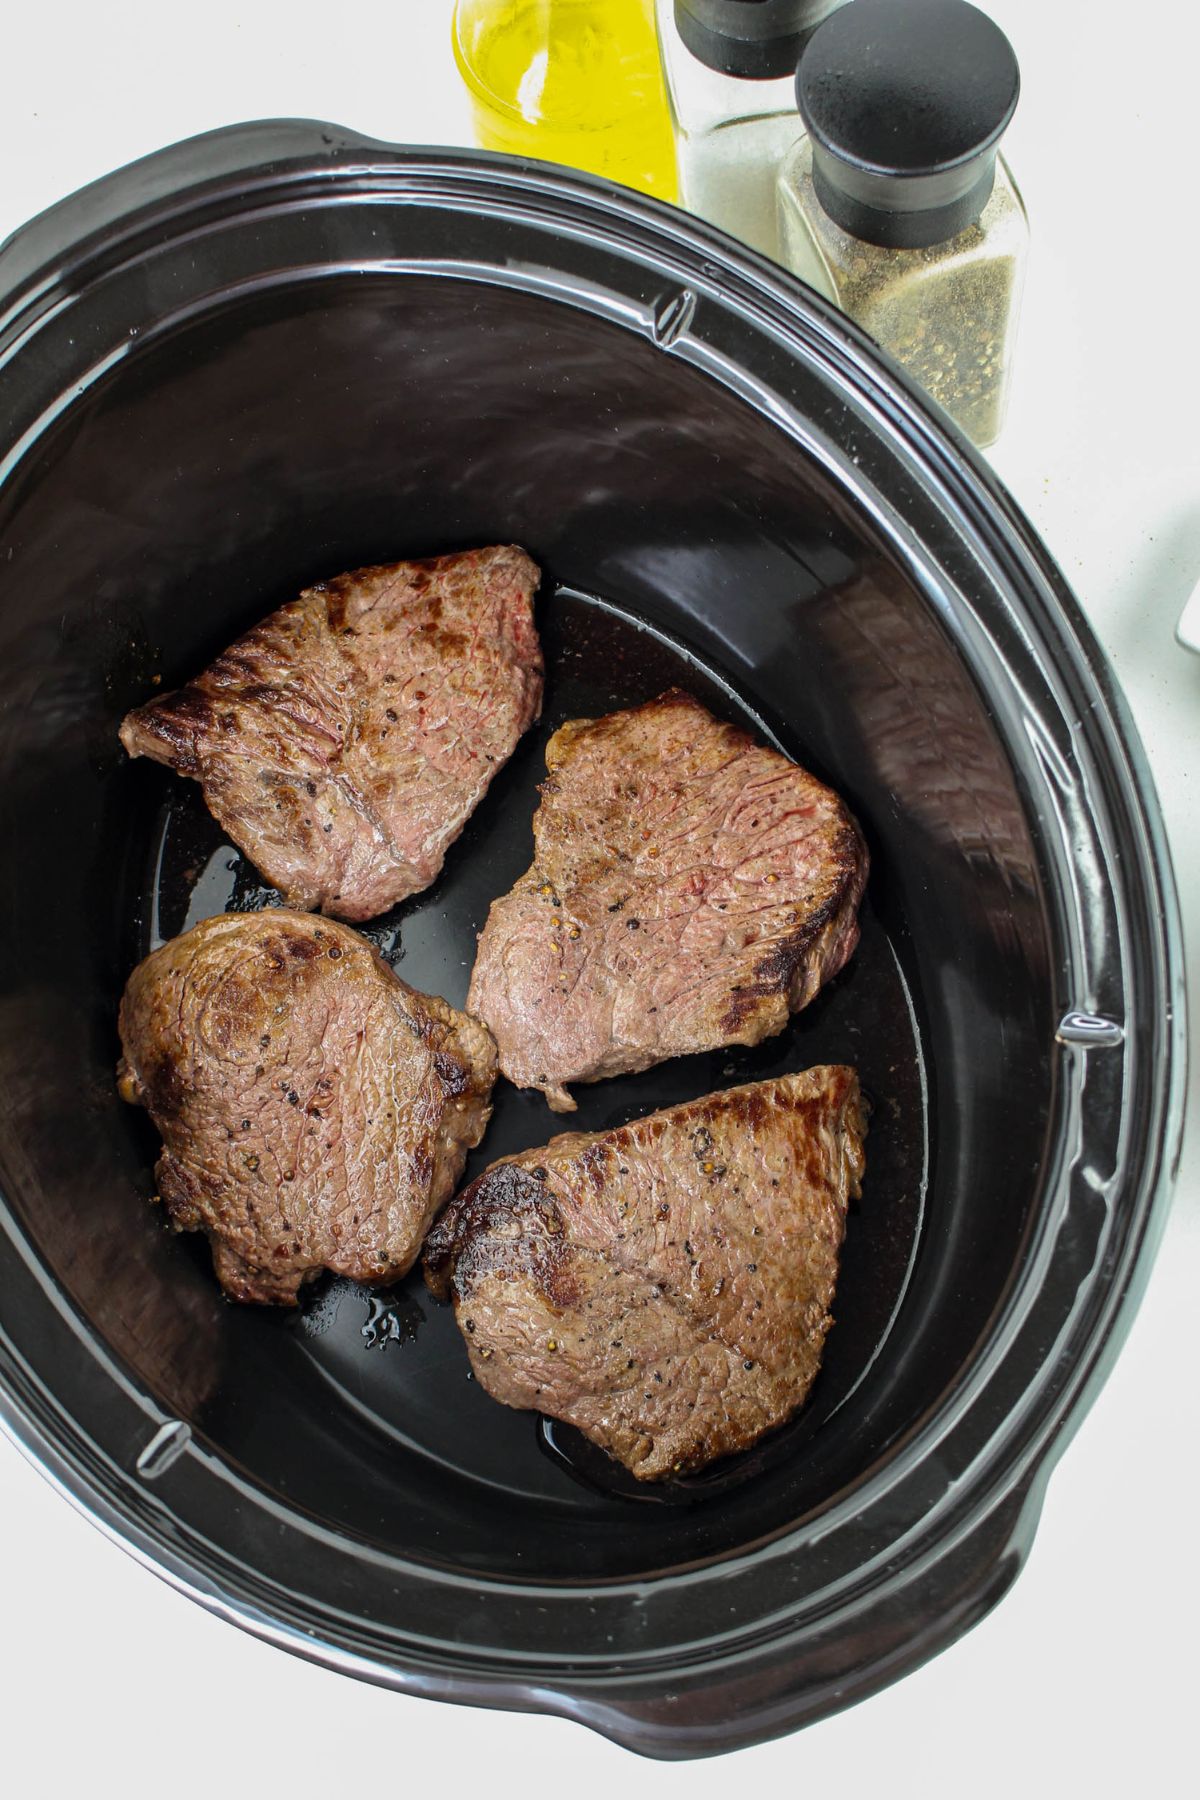 seared steaks in a slow cooker.